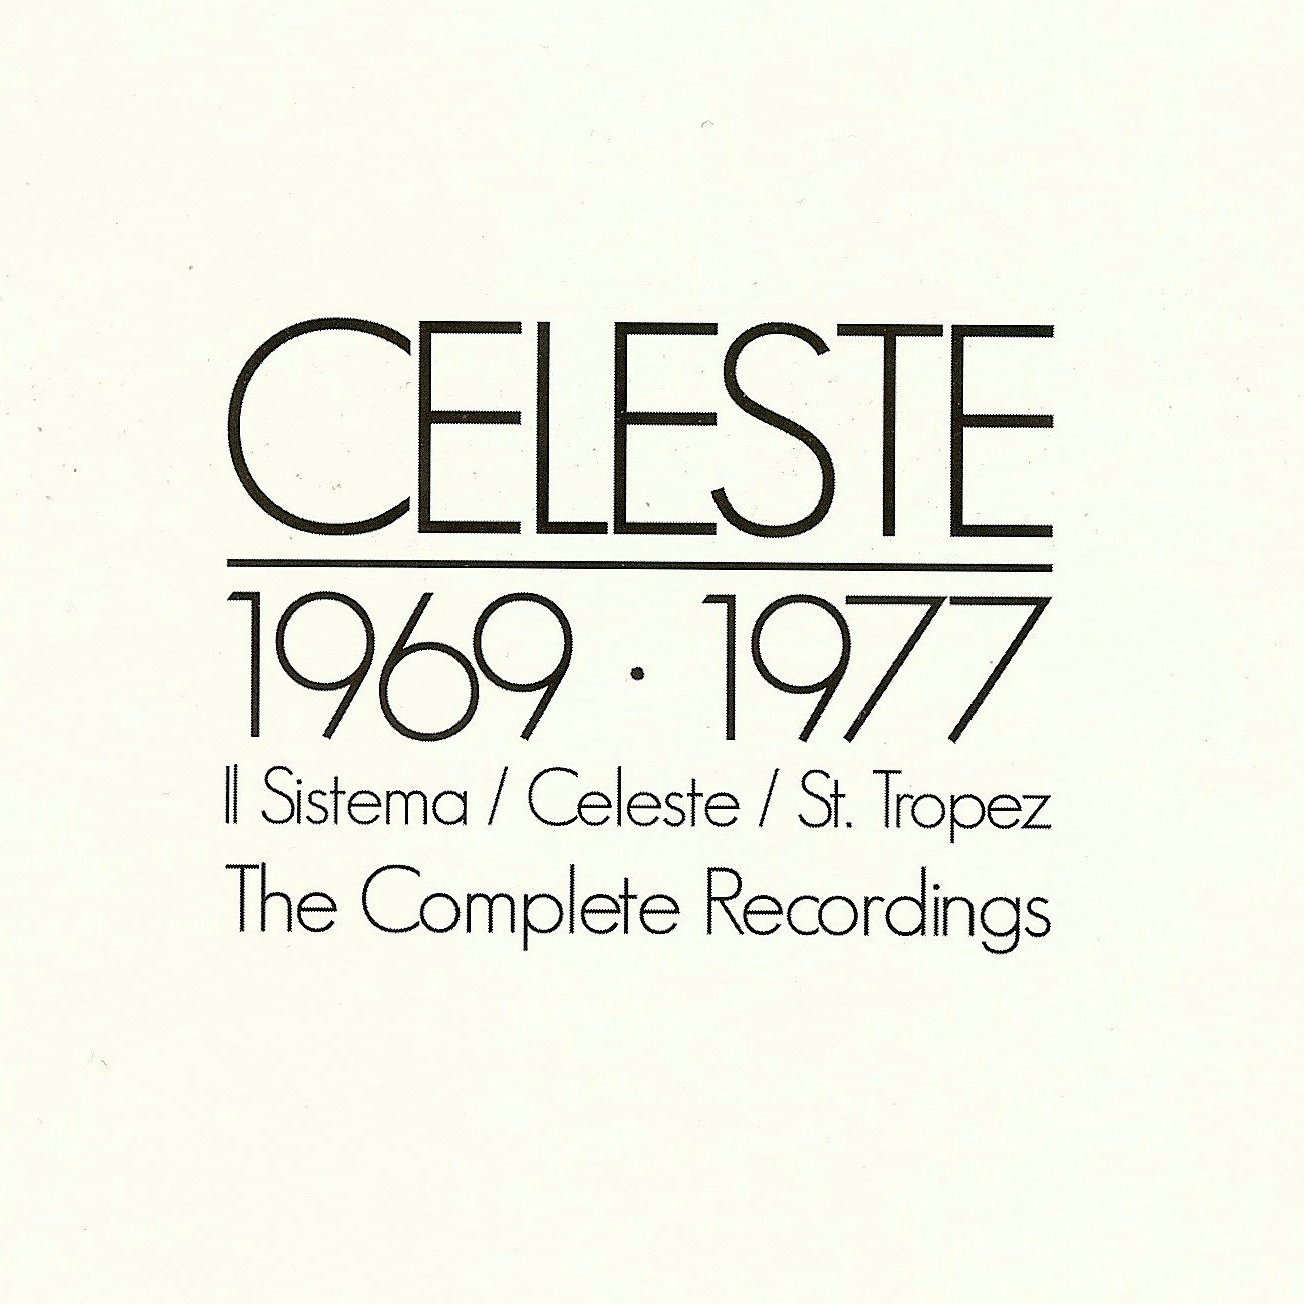 Celeste 1969-1977: The Complete Recordings album cover